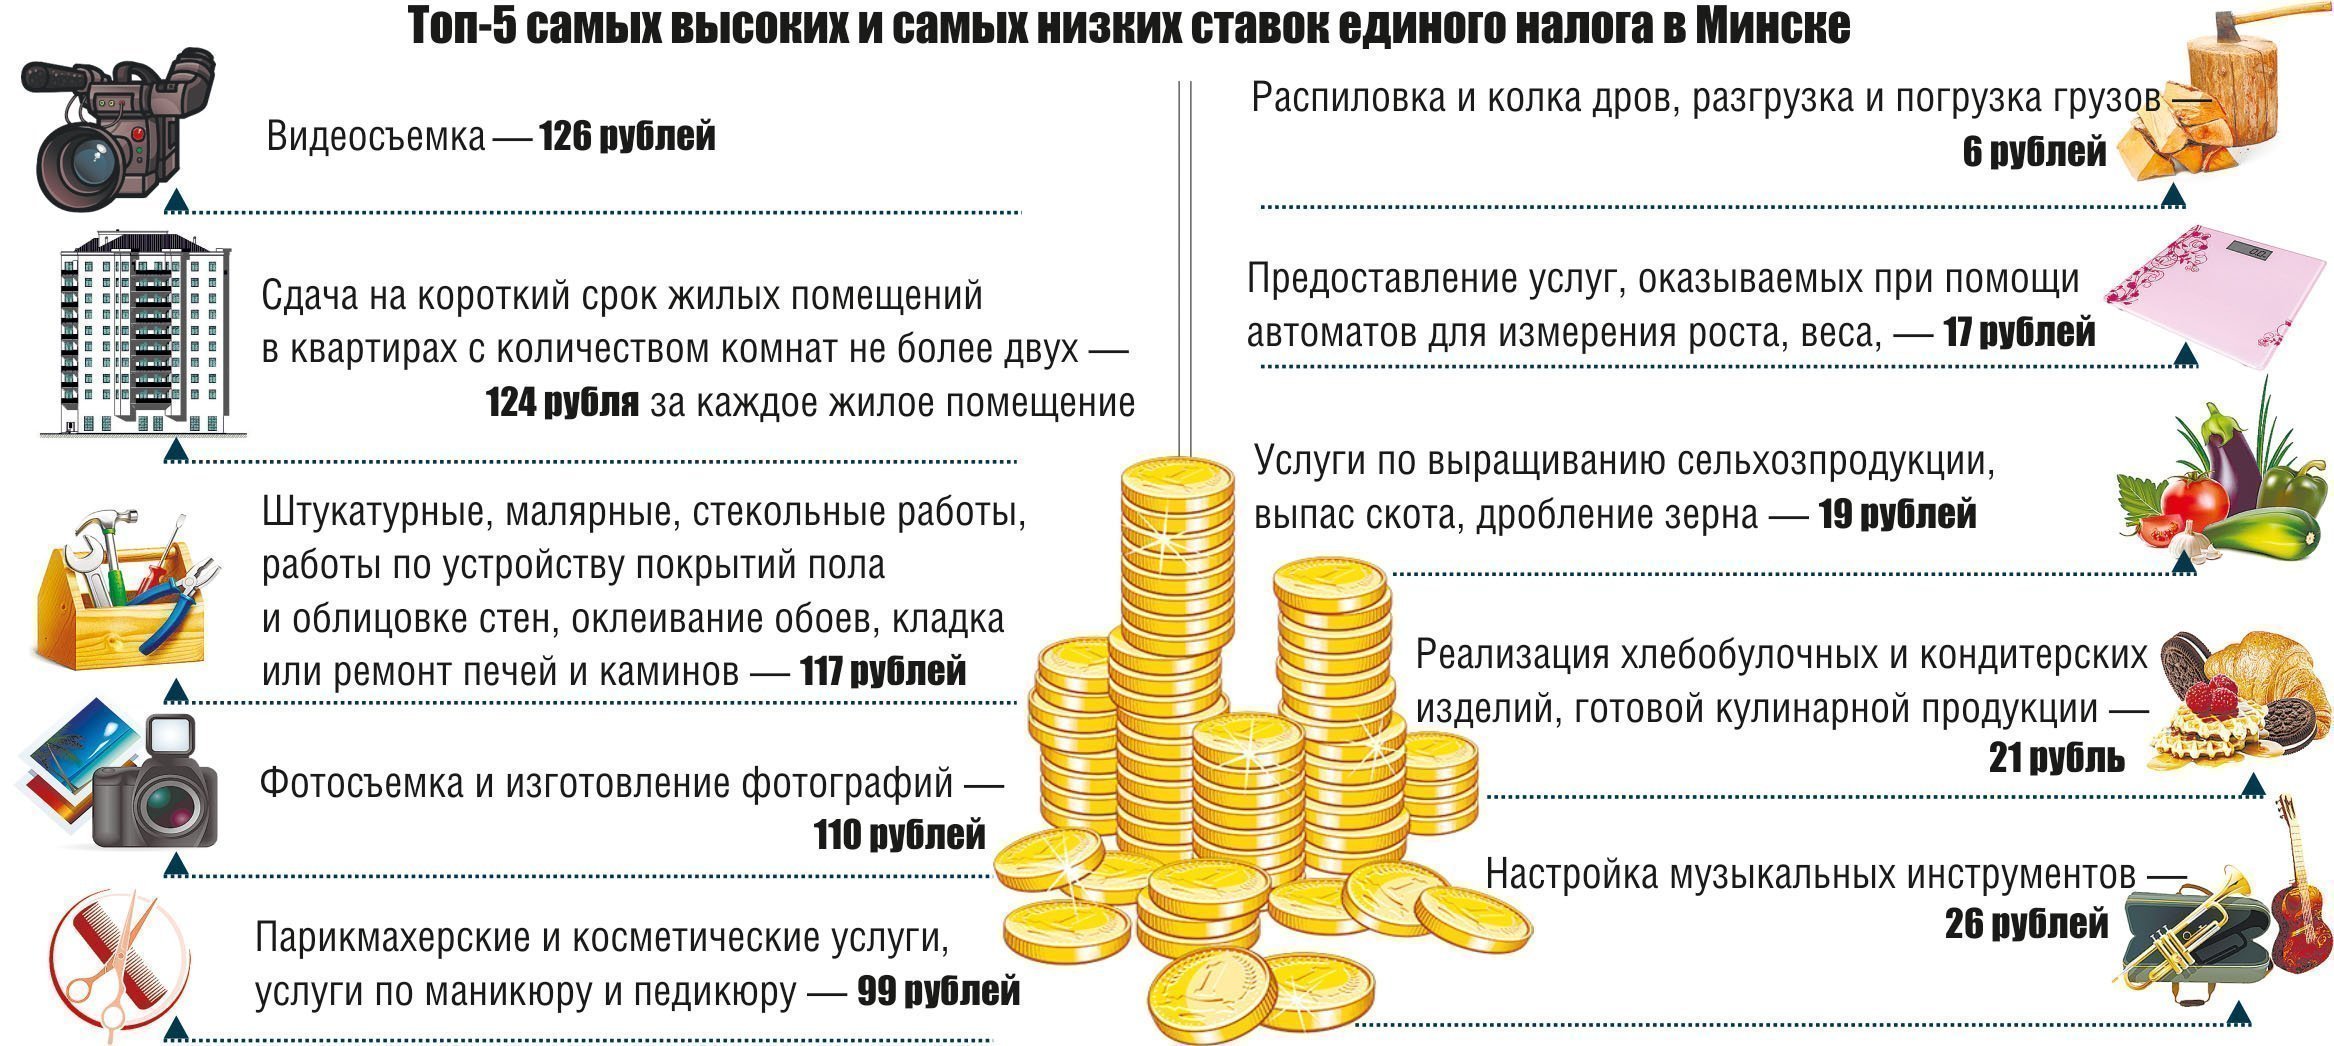 Сайт налоги беларуси. Бонусы и премии для налоговой. Какой единый налог для самозанятых в Беларуси по установке дверей.